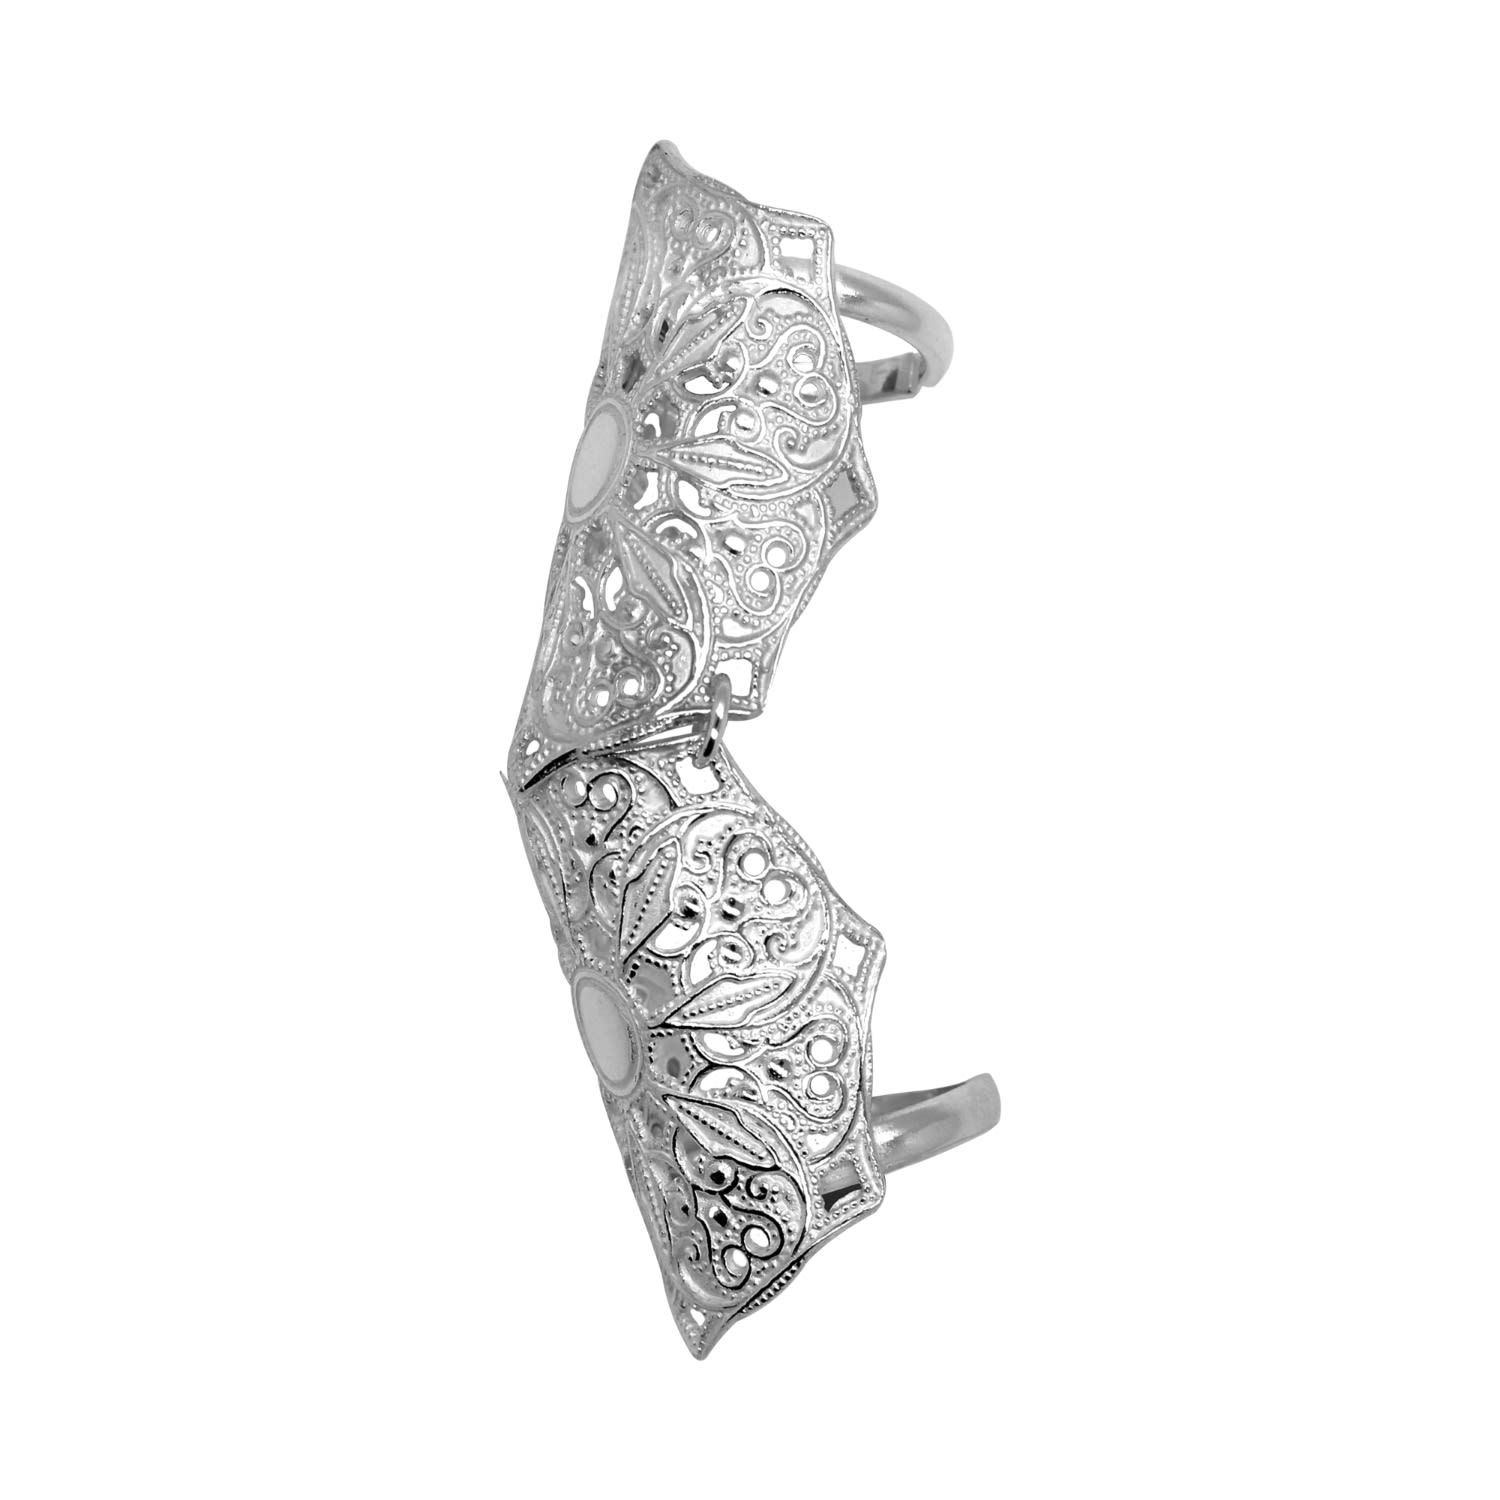 Lucy Ashton Jewellery Women's Artisanal Silver Adjustable Full Finger Mandala Ring Lucy Ashton Jewellery